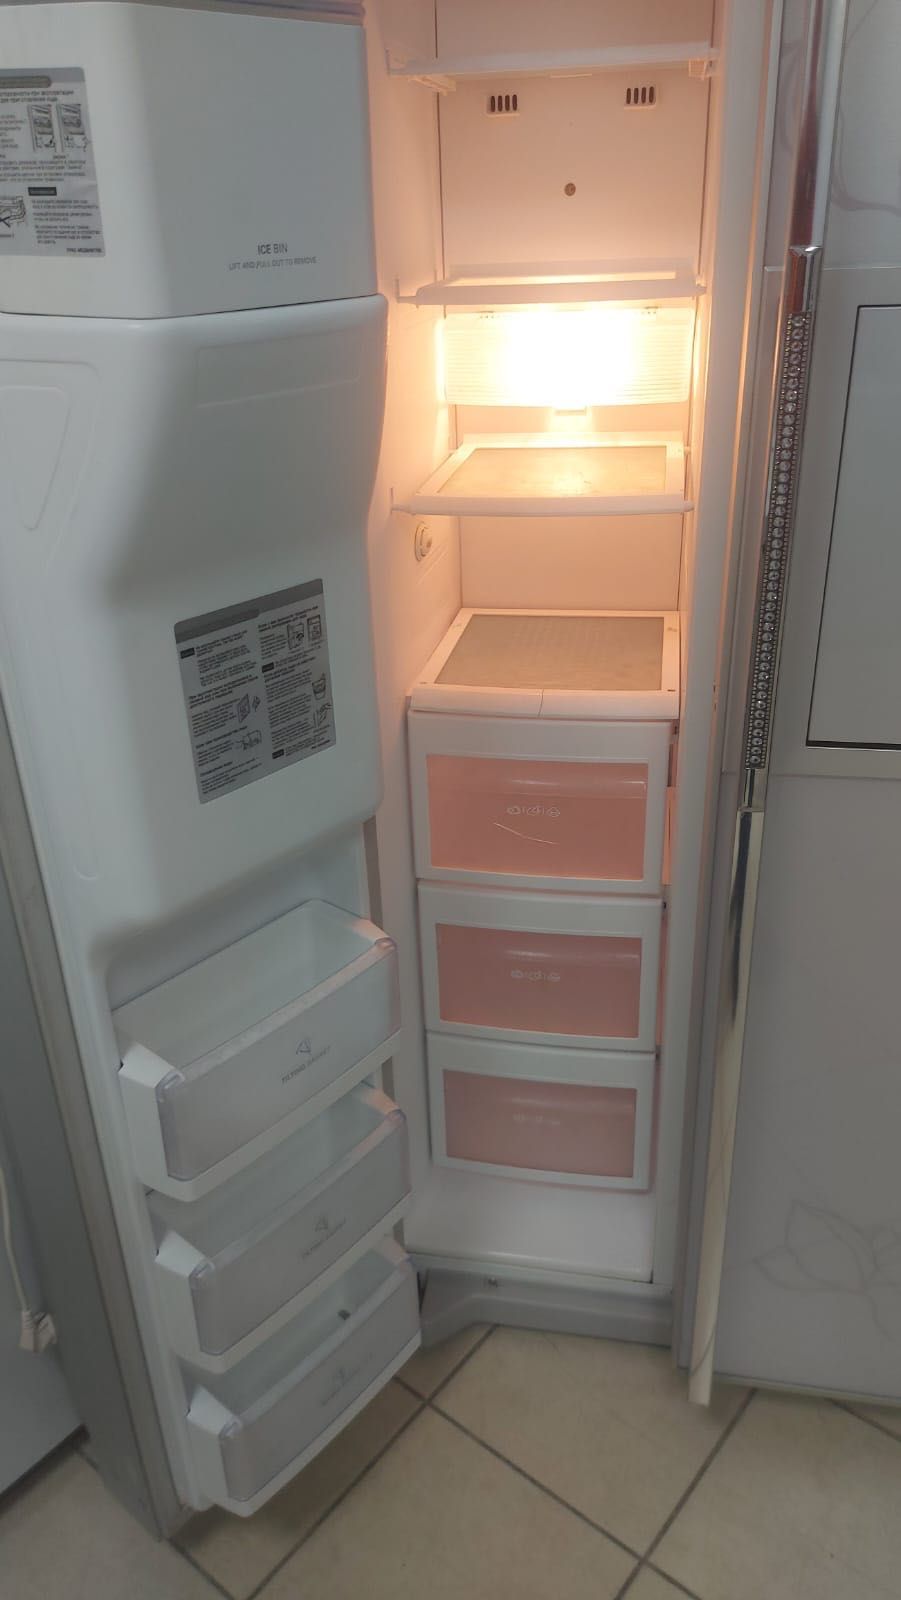 холодильник LG в отличном состоянии